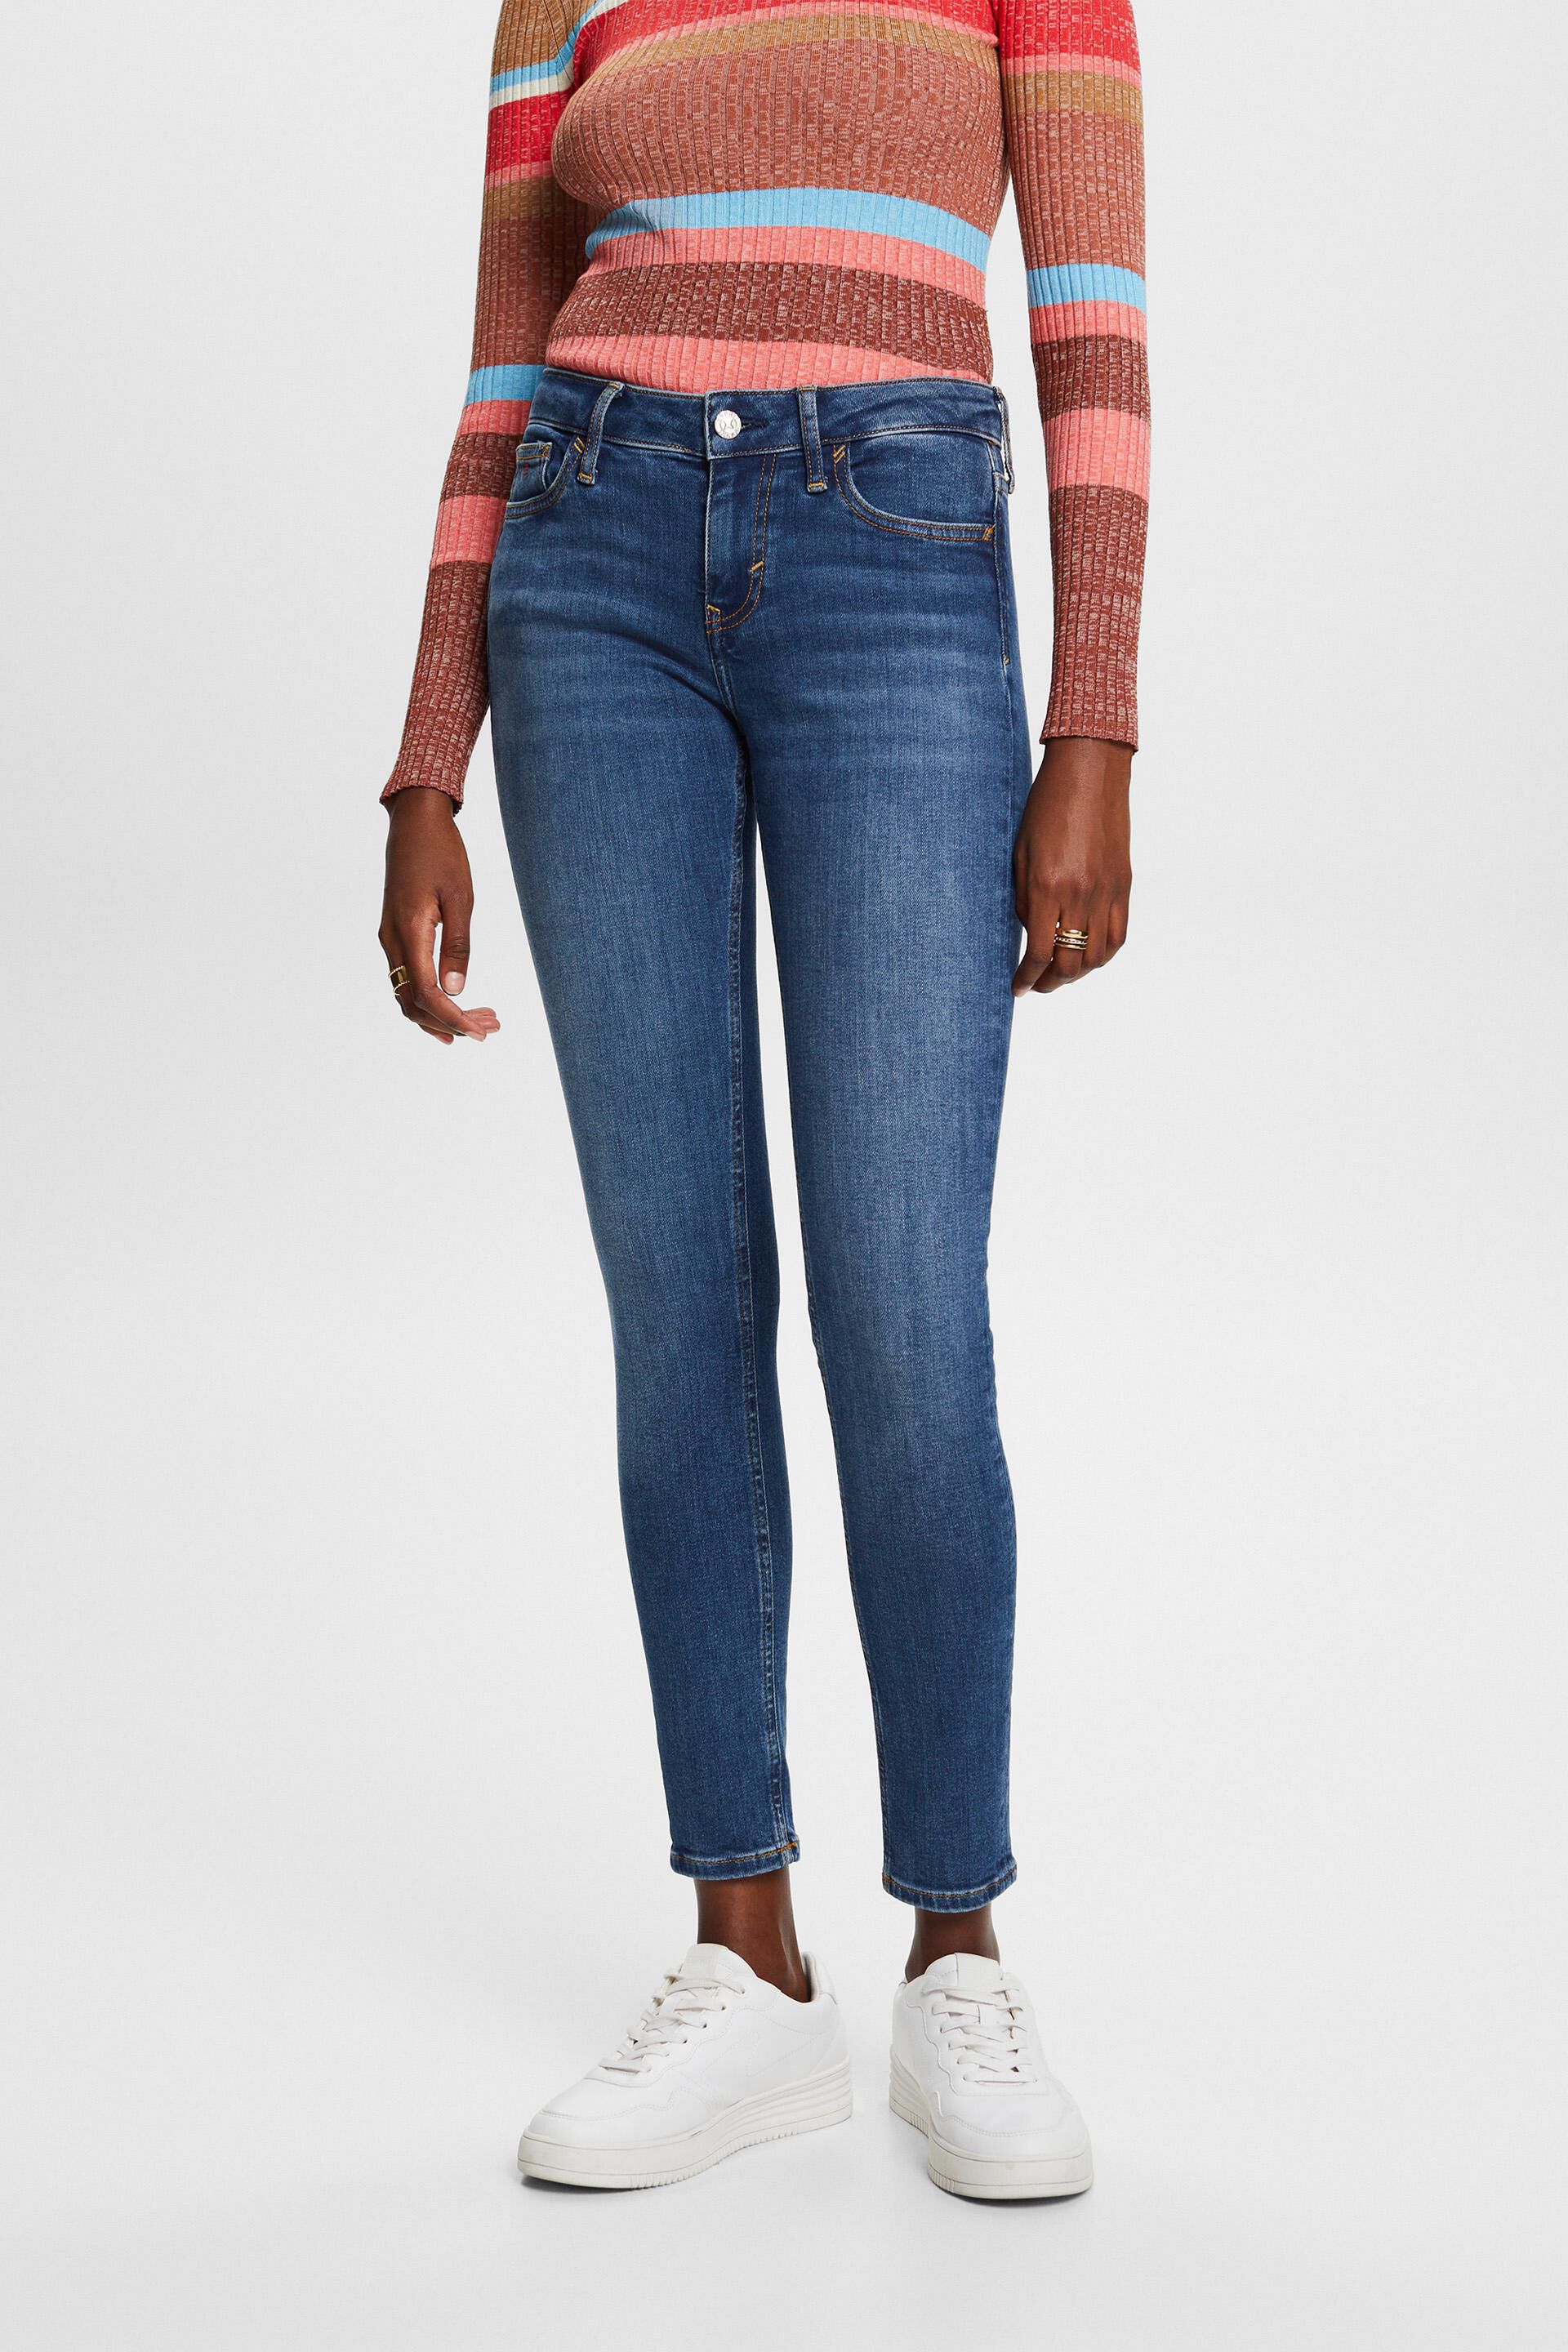 Esprit jeans mid-rise Premium skinny